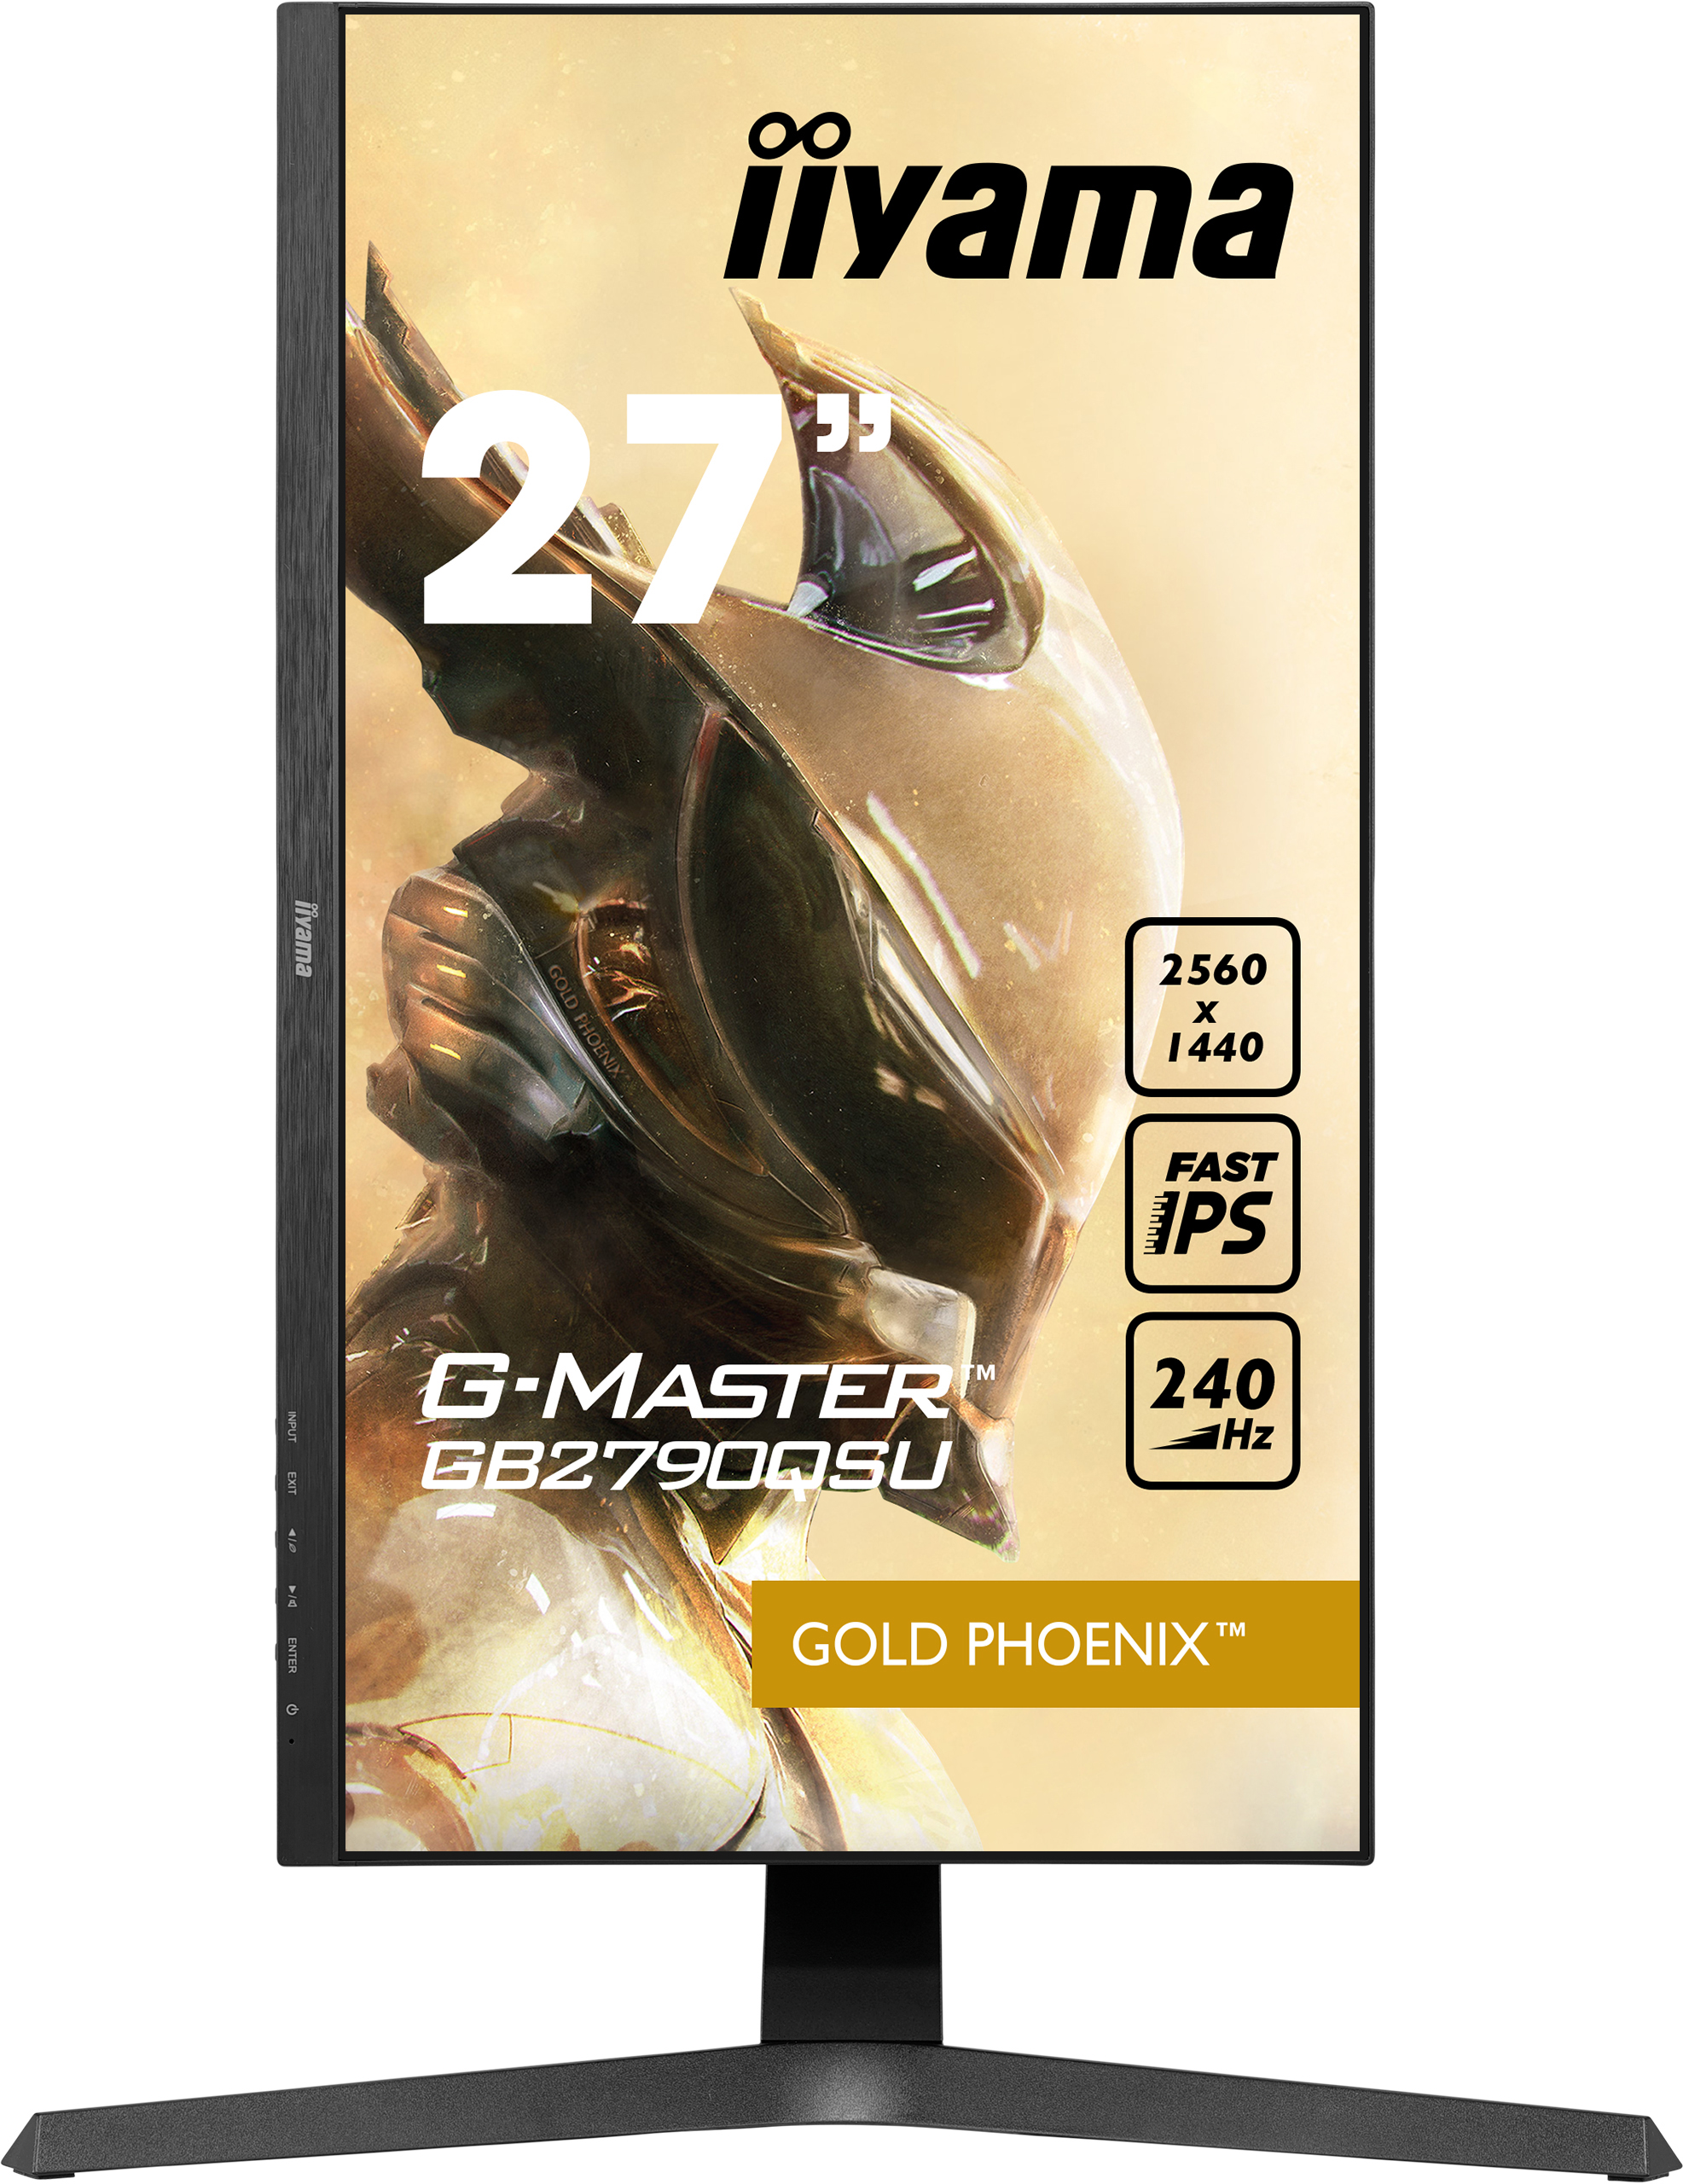 Iiyama G-MASTER GB2790QSU-B1 GOLD PHOENIX | 27" | WQHD | Gaming Monitor